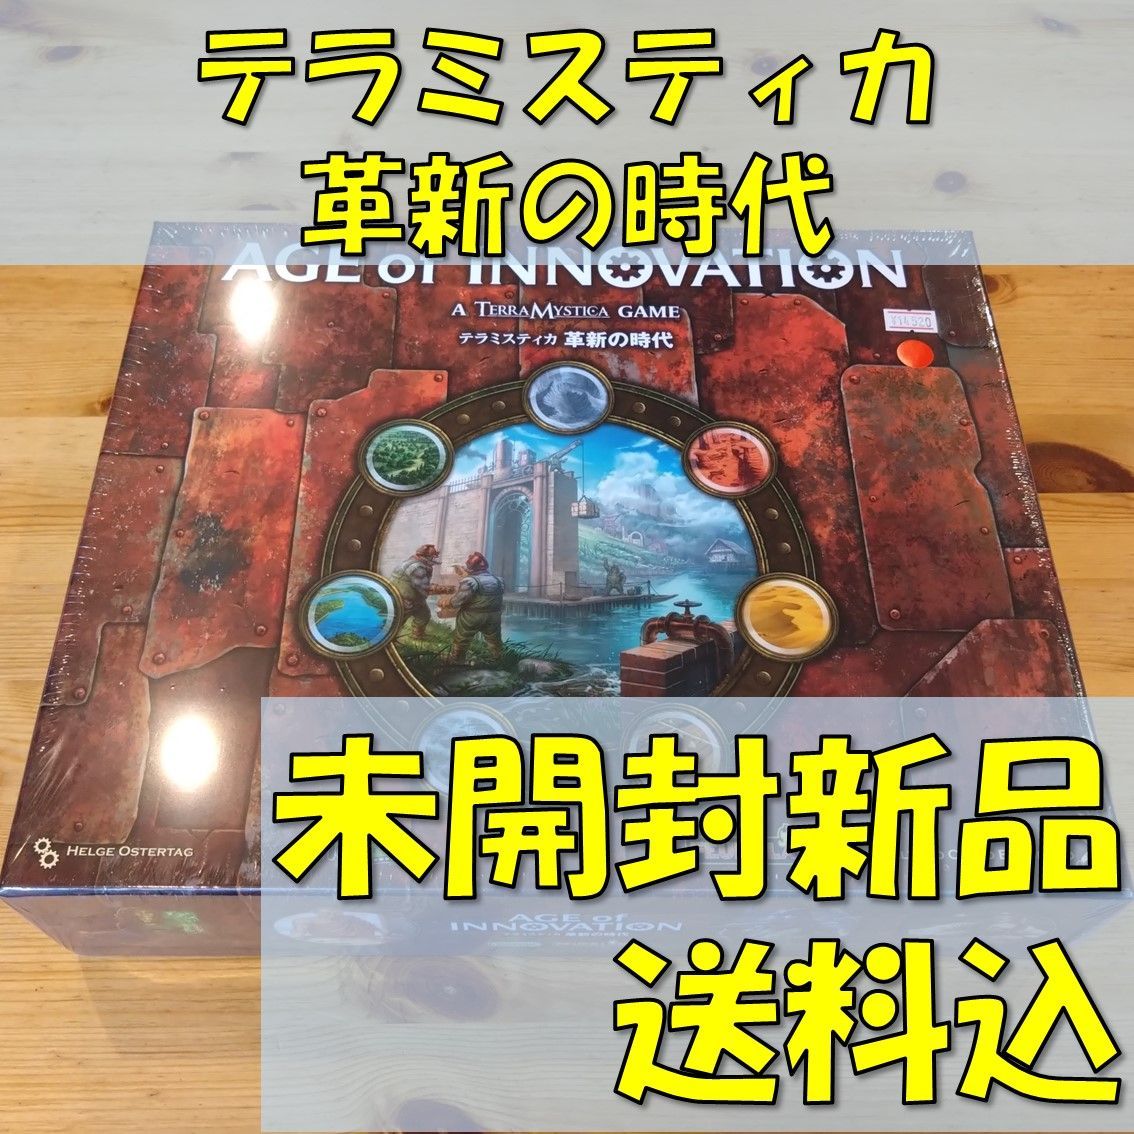 テラミスティカ 革新の時代 日本語版 【ボードゲーム】 - メルカリ